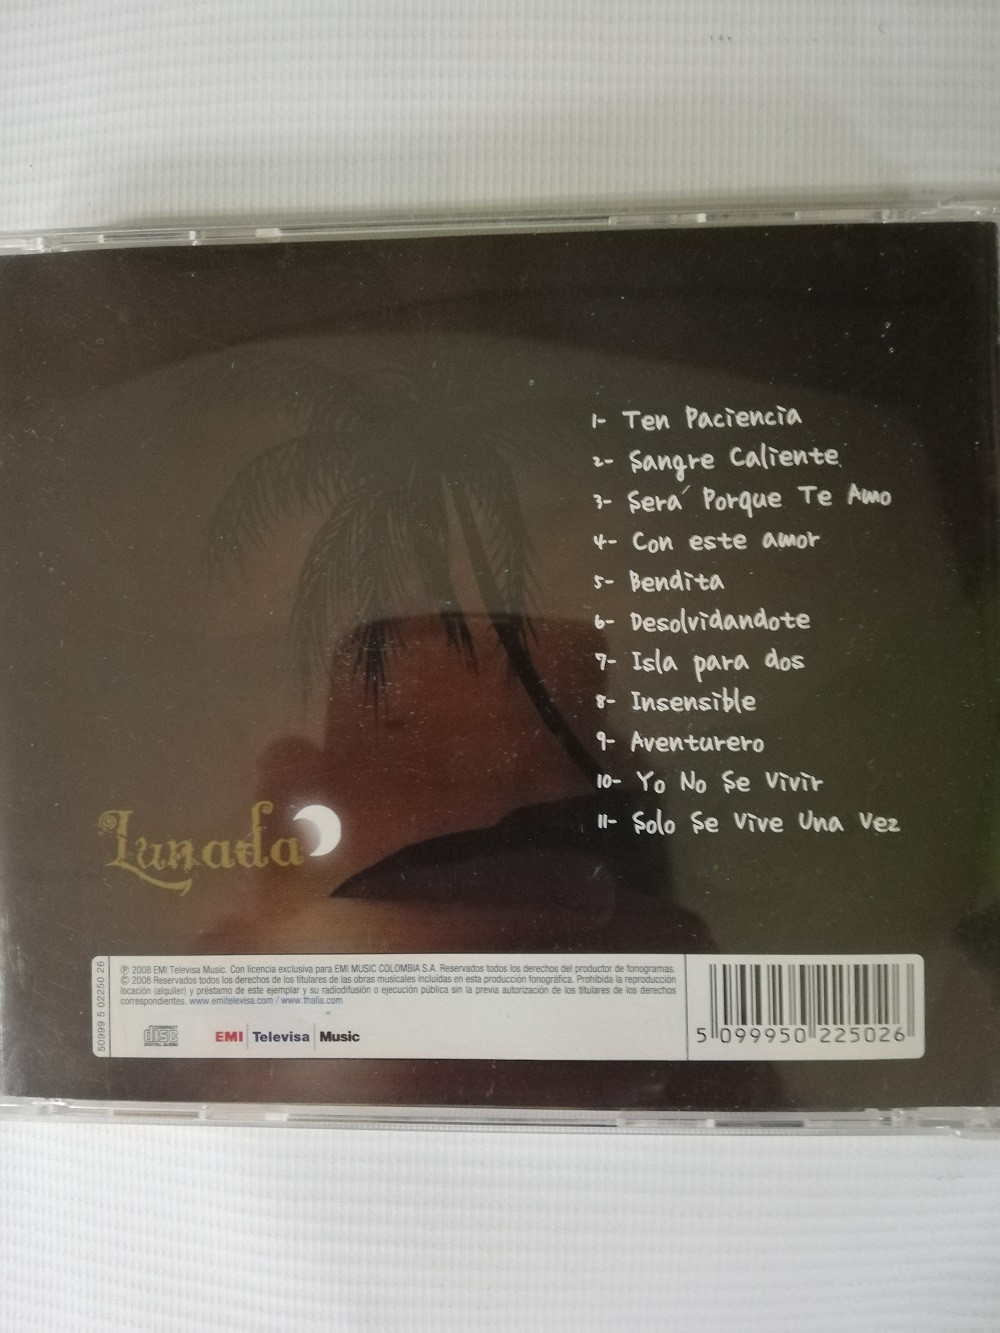 Imagen CD THALIA - LUNADA 2